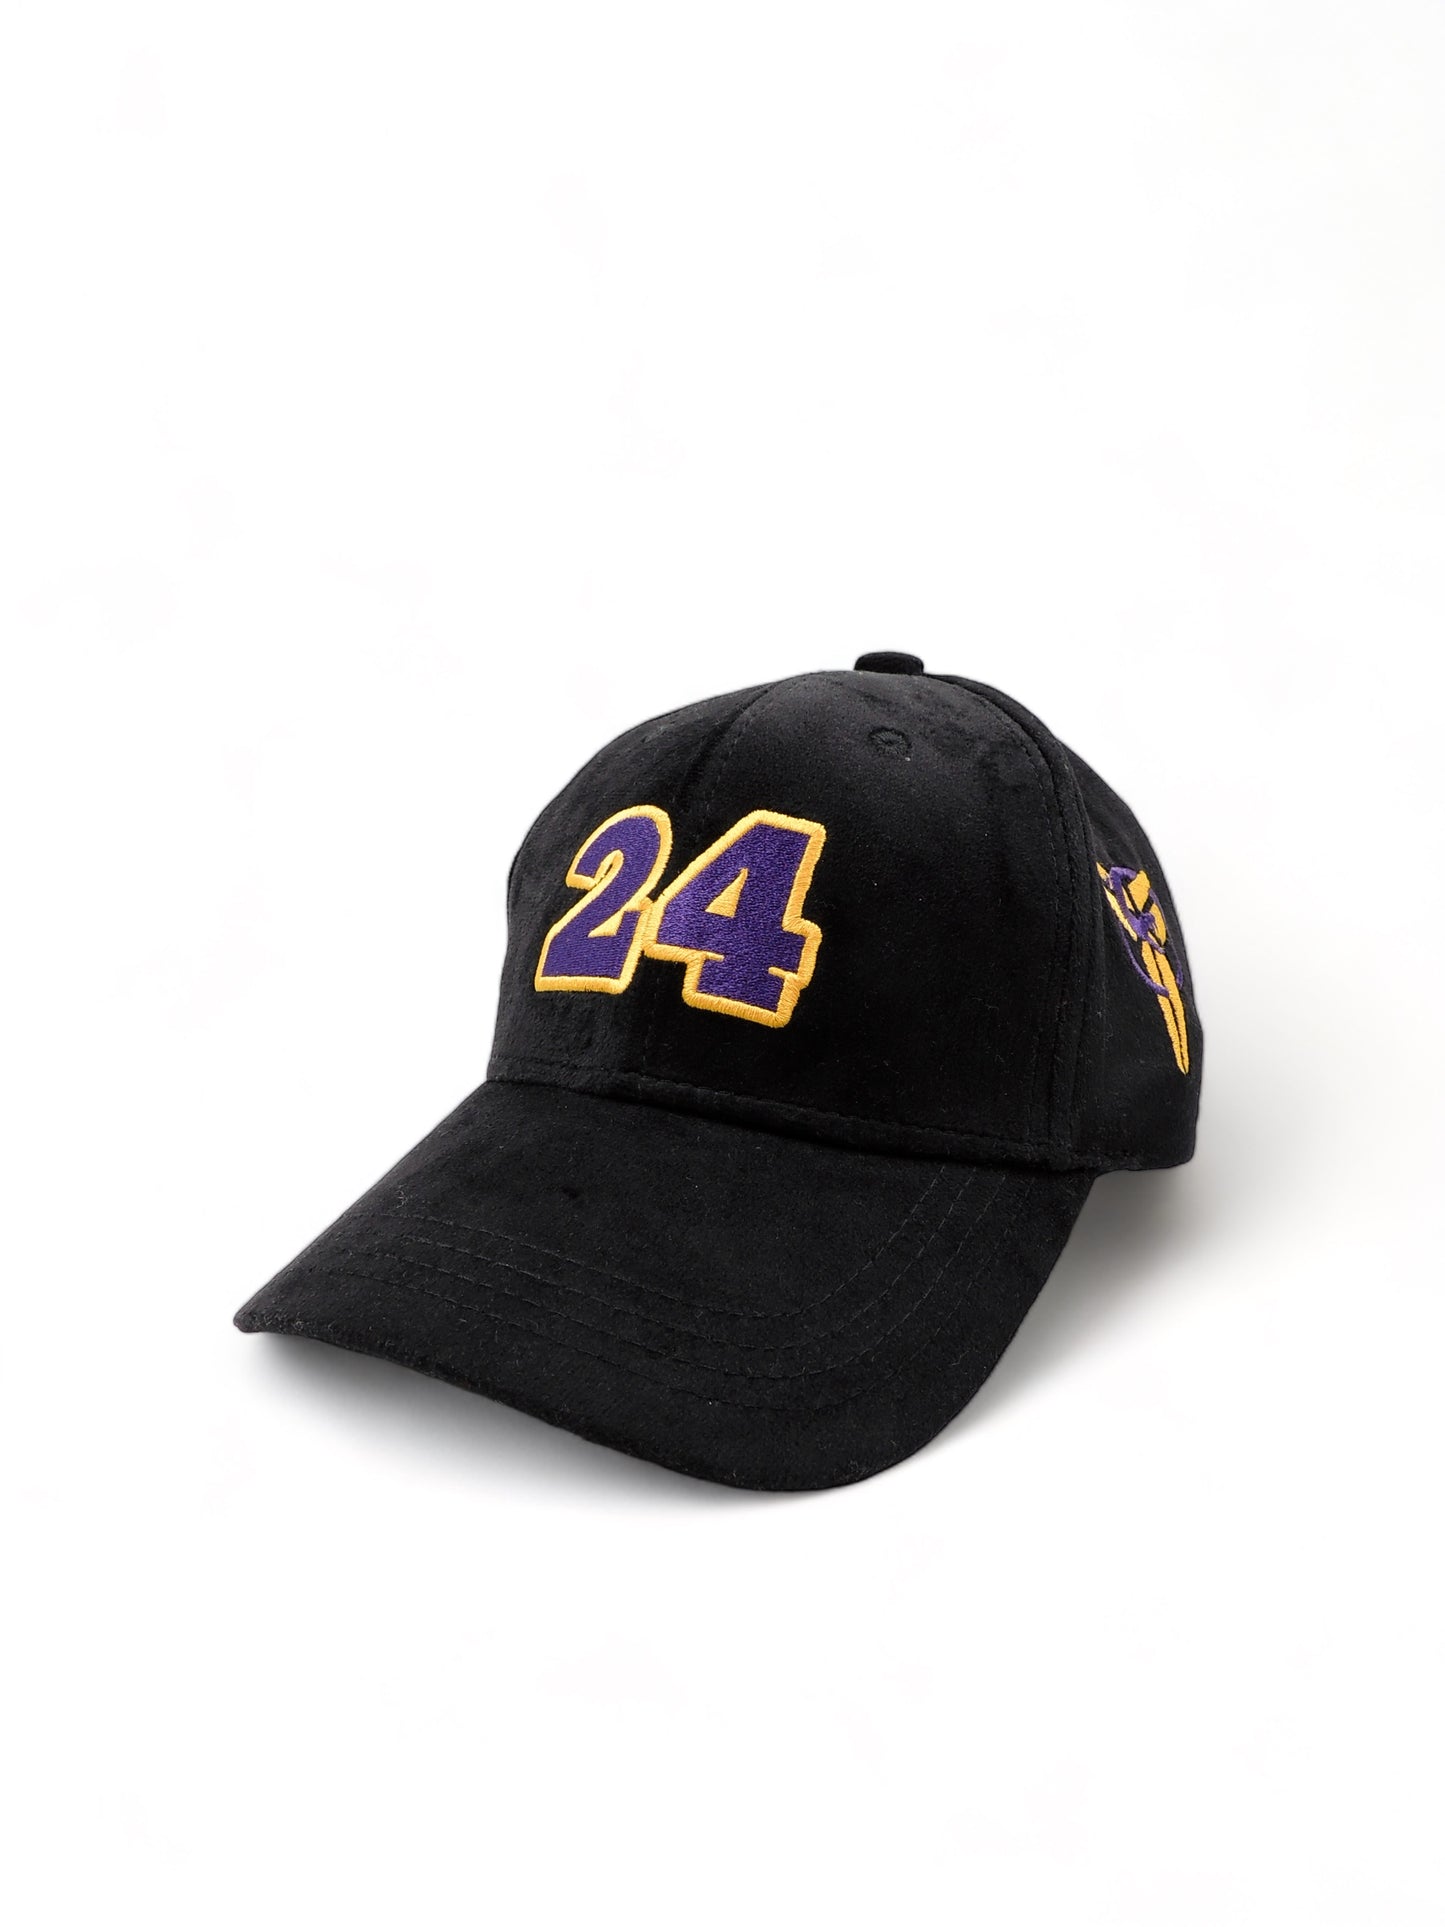 Kobe 24 - Mamba Hat